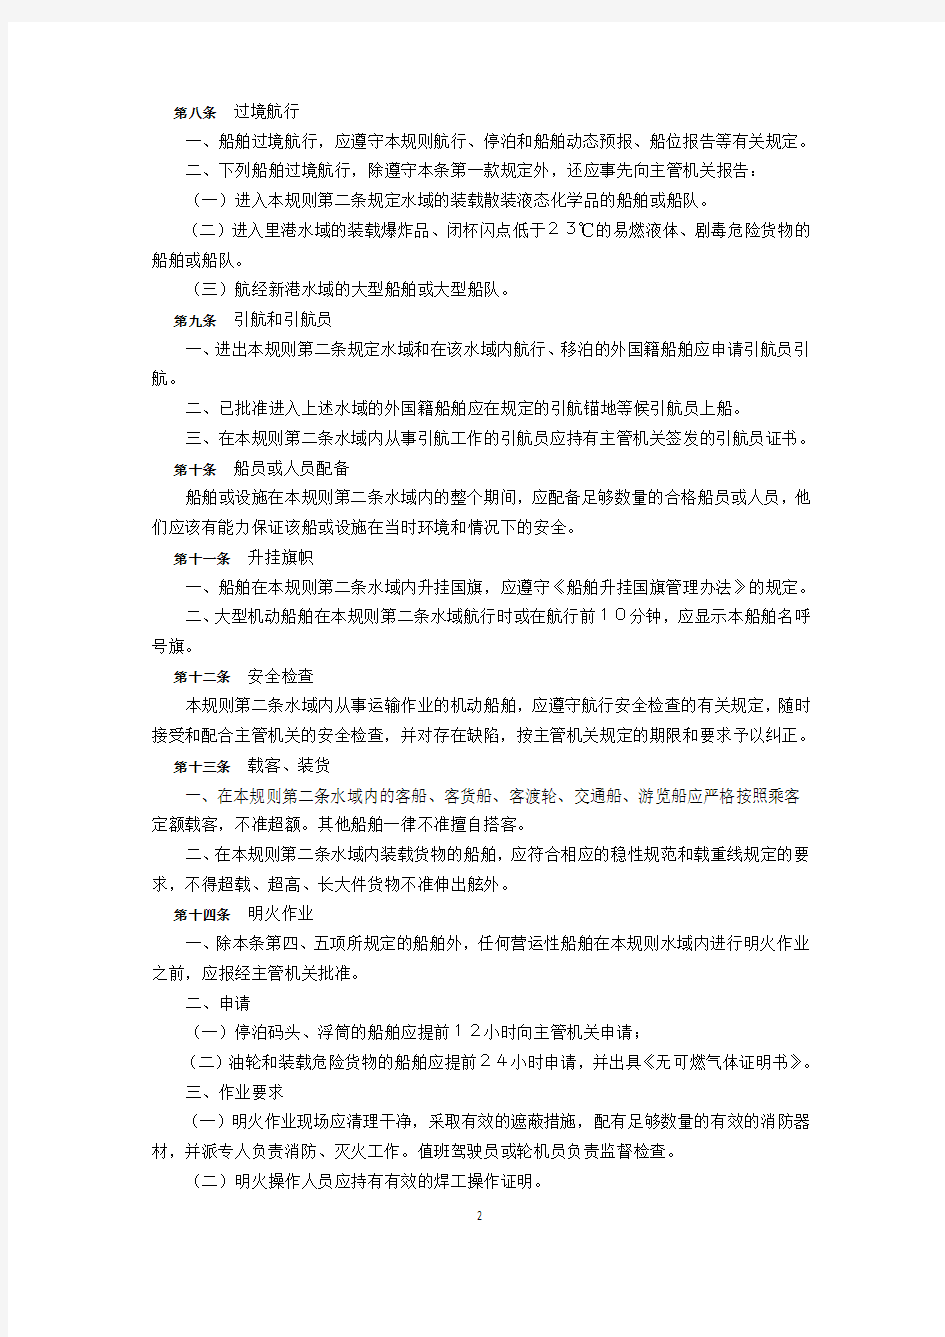 交通部关于上海水上安全监督规则规定